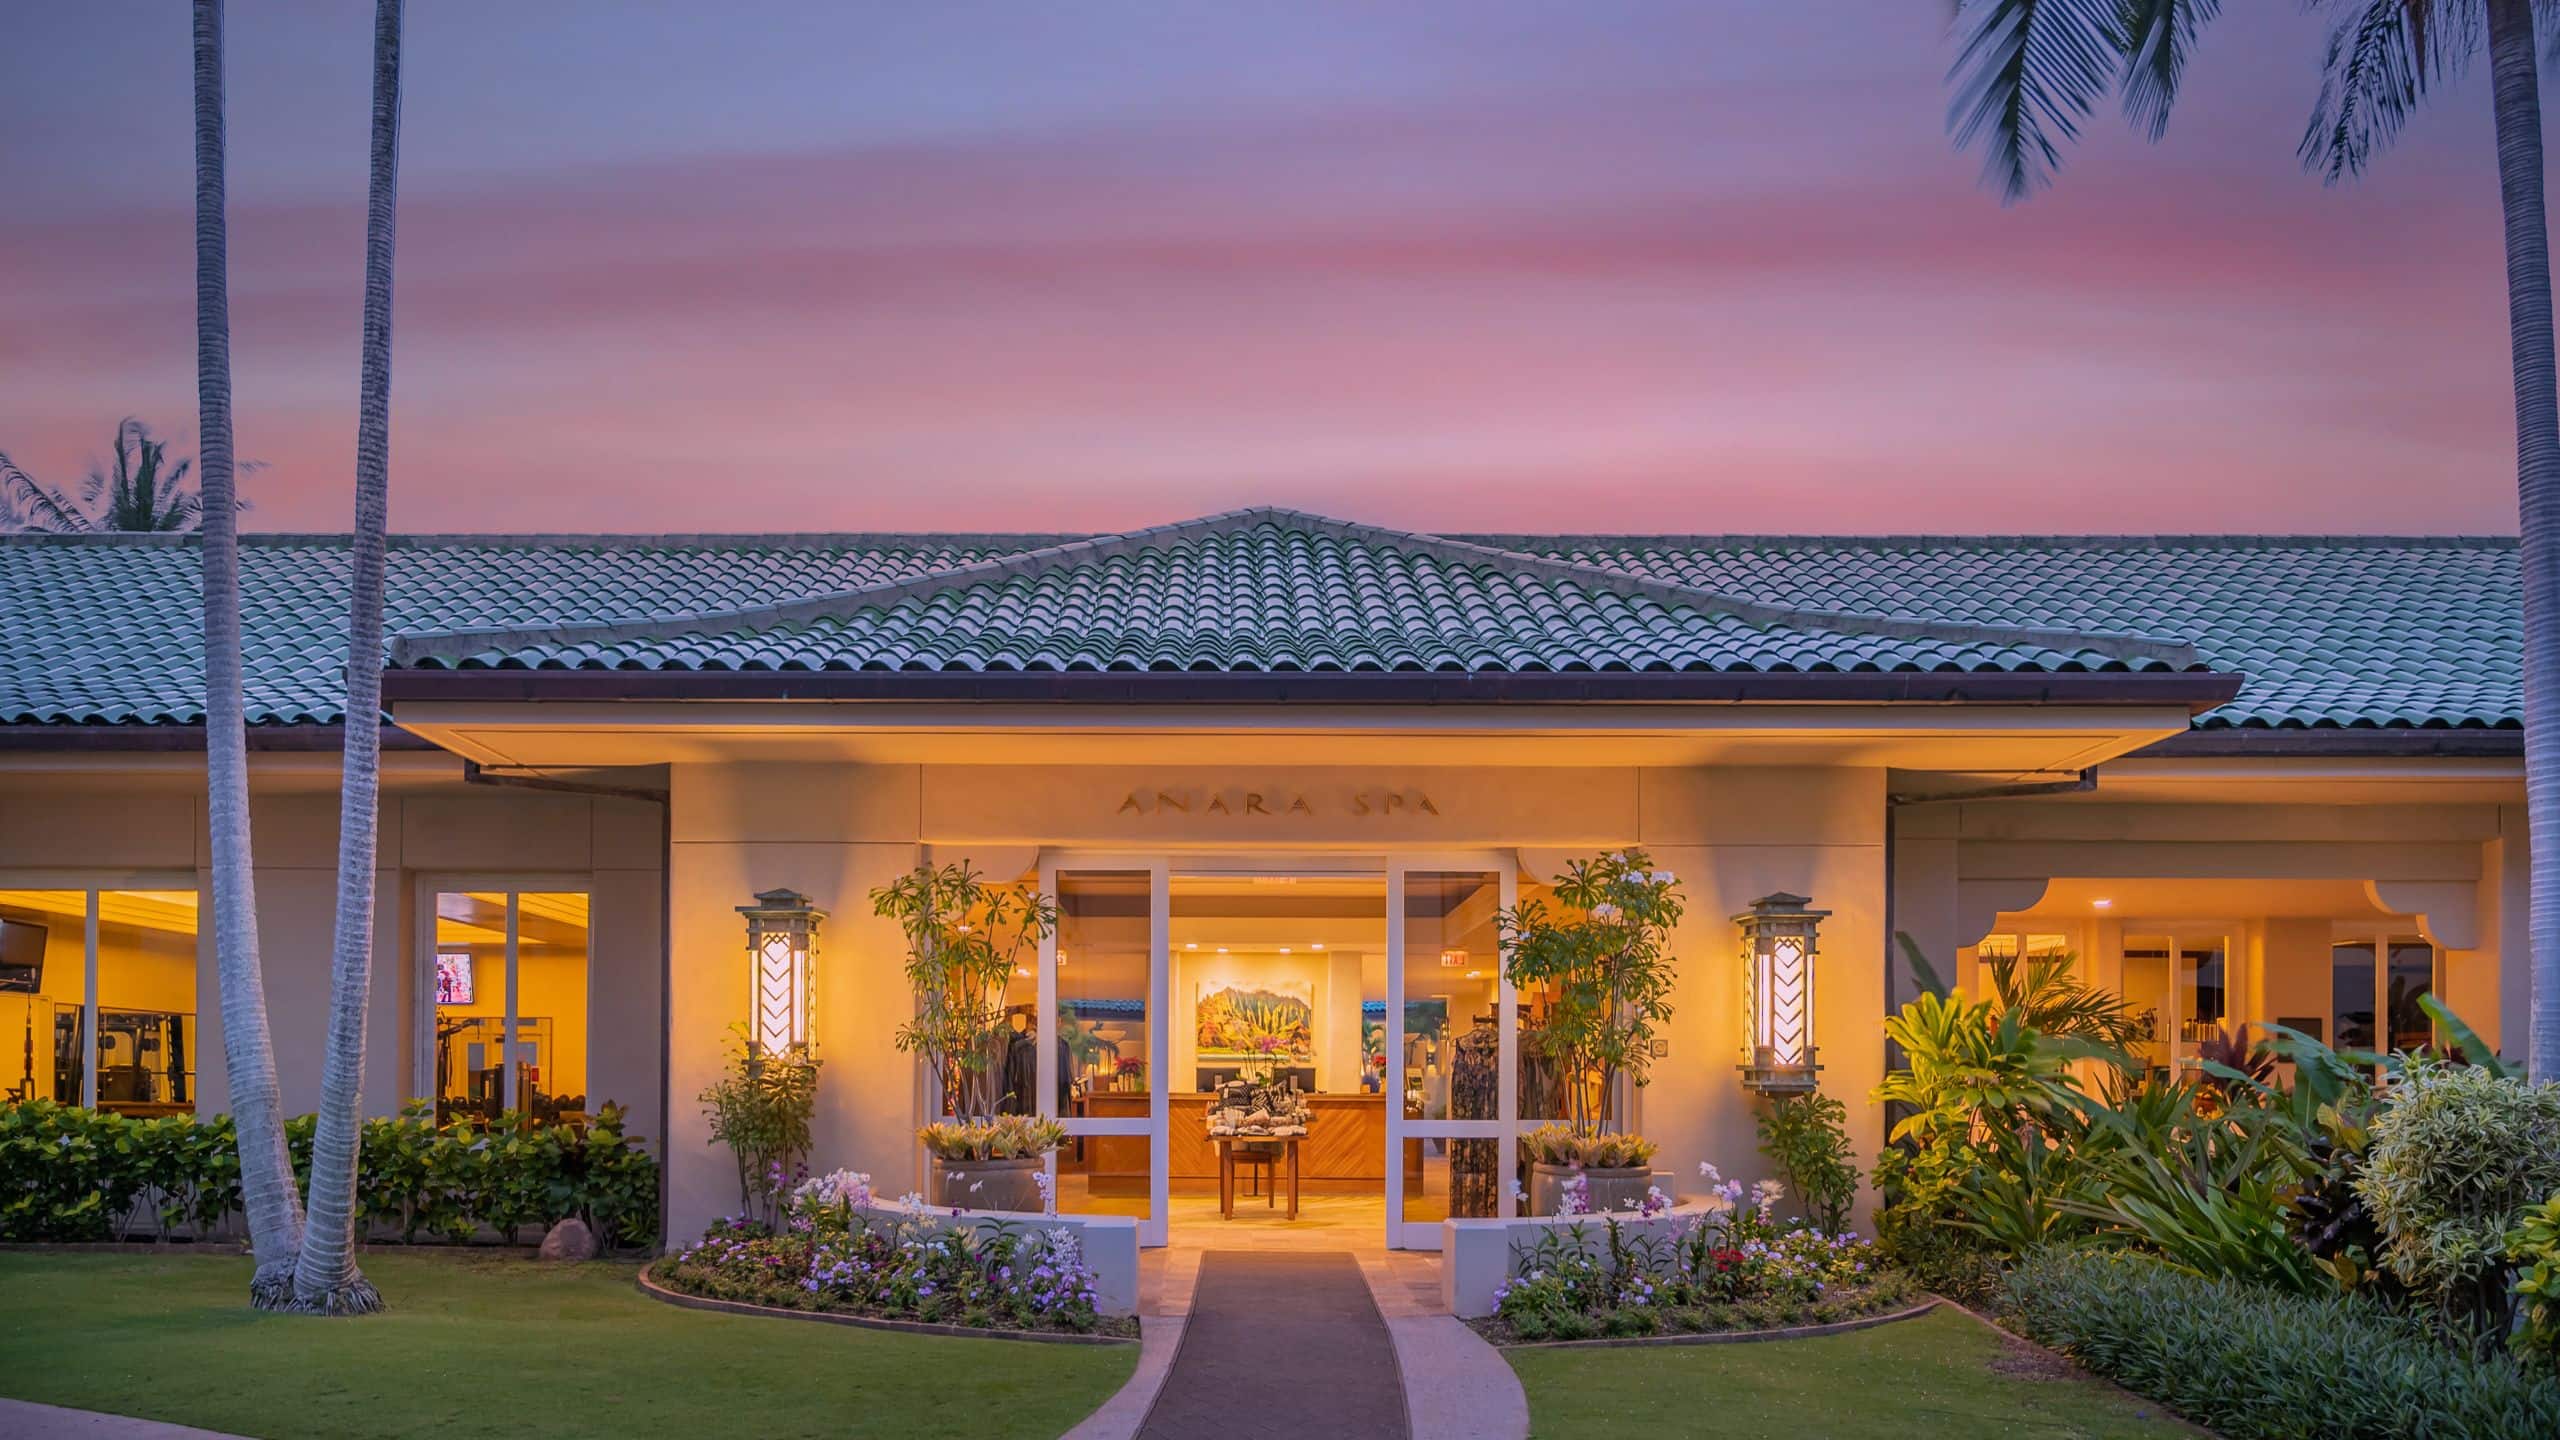 Grand Hyatt Kauai Resort & Spa Anara Spa Entry Sunset